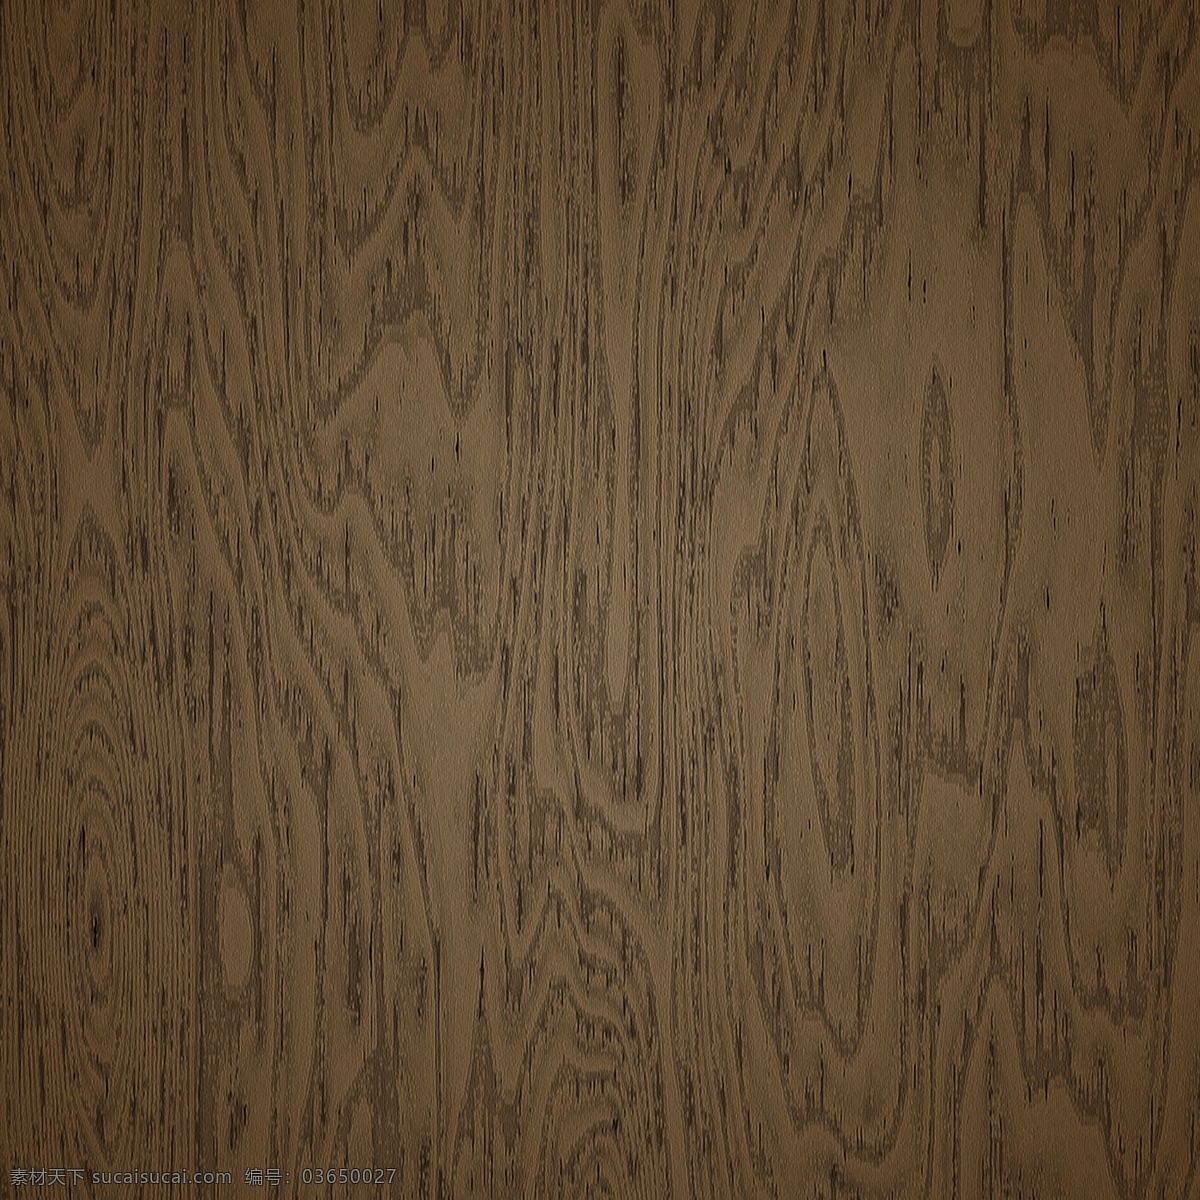 高 分辨率 完全 平坦 木材 纹理 背景 web 创意 高分辨率 核桃 粮食 免费 木纹 病 媒 生物 时尚 独特的 原始的 高质量 图形 质量 新鲜的 设计木材 棕色的 psd源文件